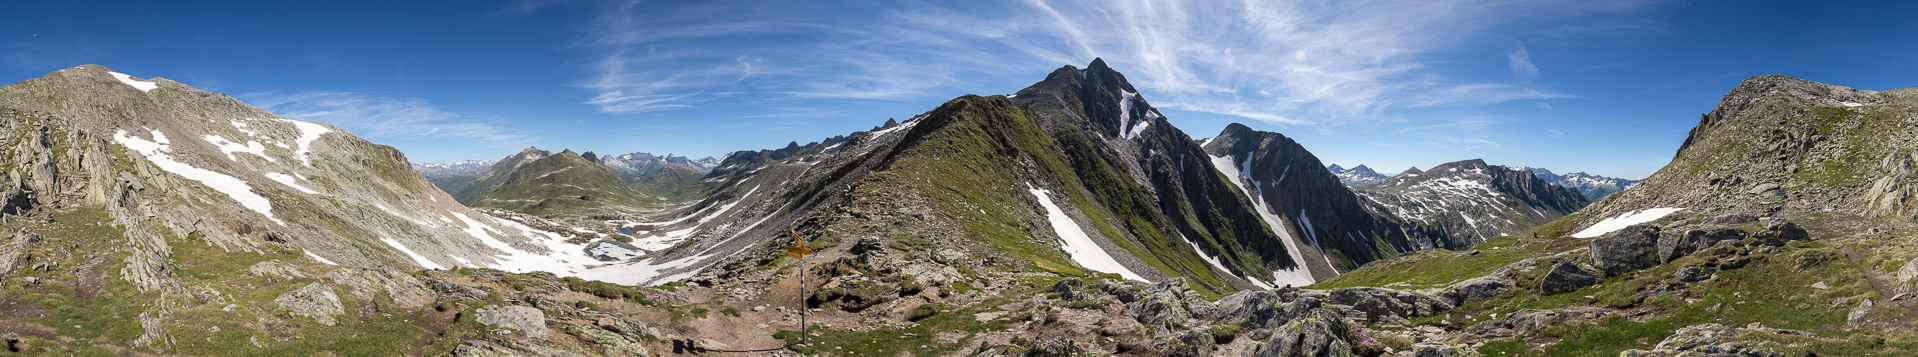 Von links kommt der Weg aus Graubünden, um rechts ins Tessin zu schwenken - rechts der Bildmitte das Signal Borel (Piz Cadlimo).